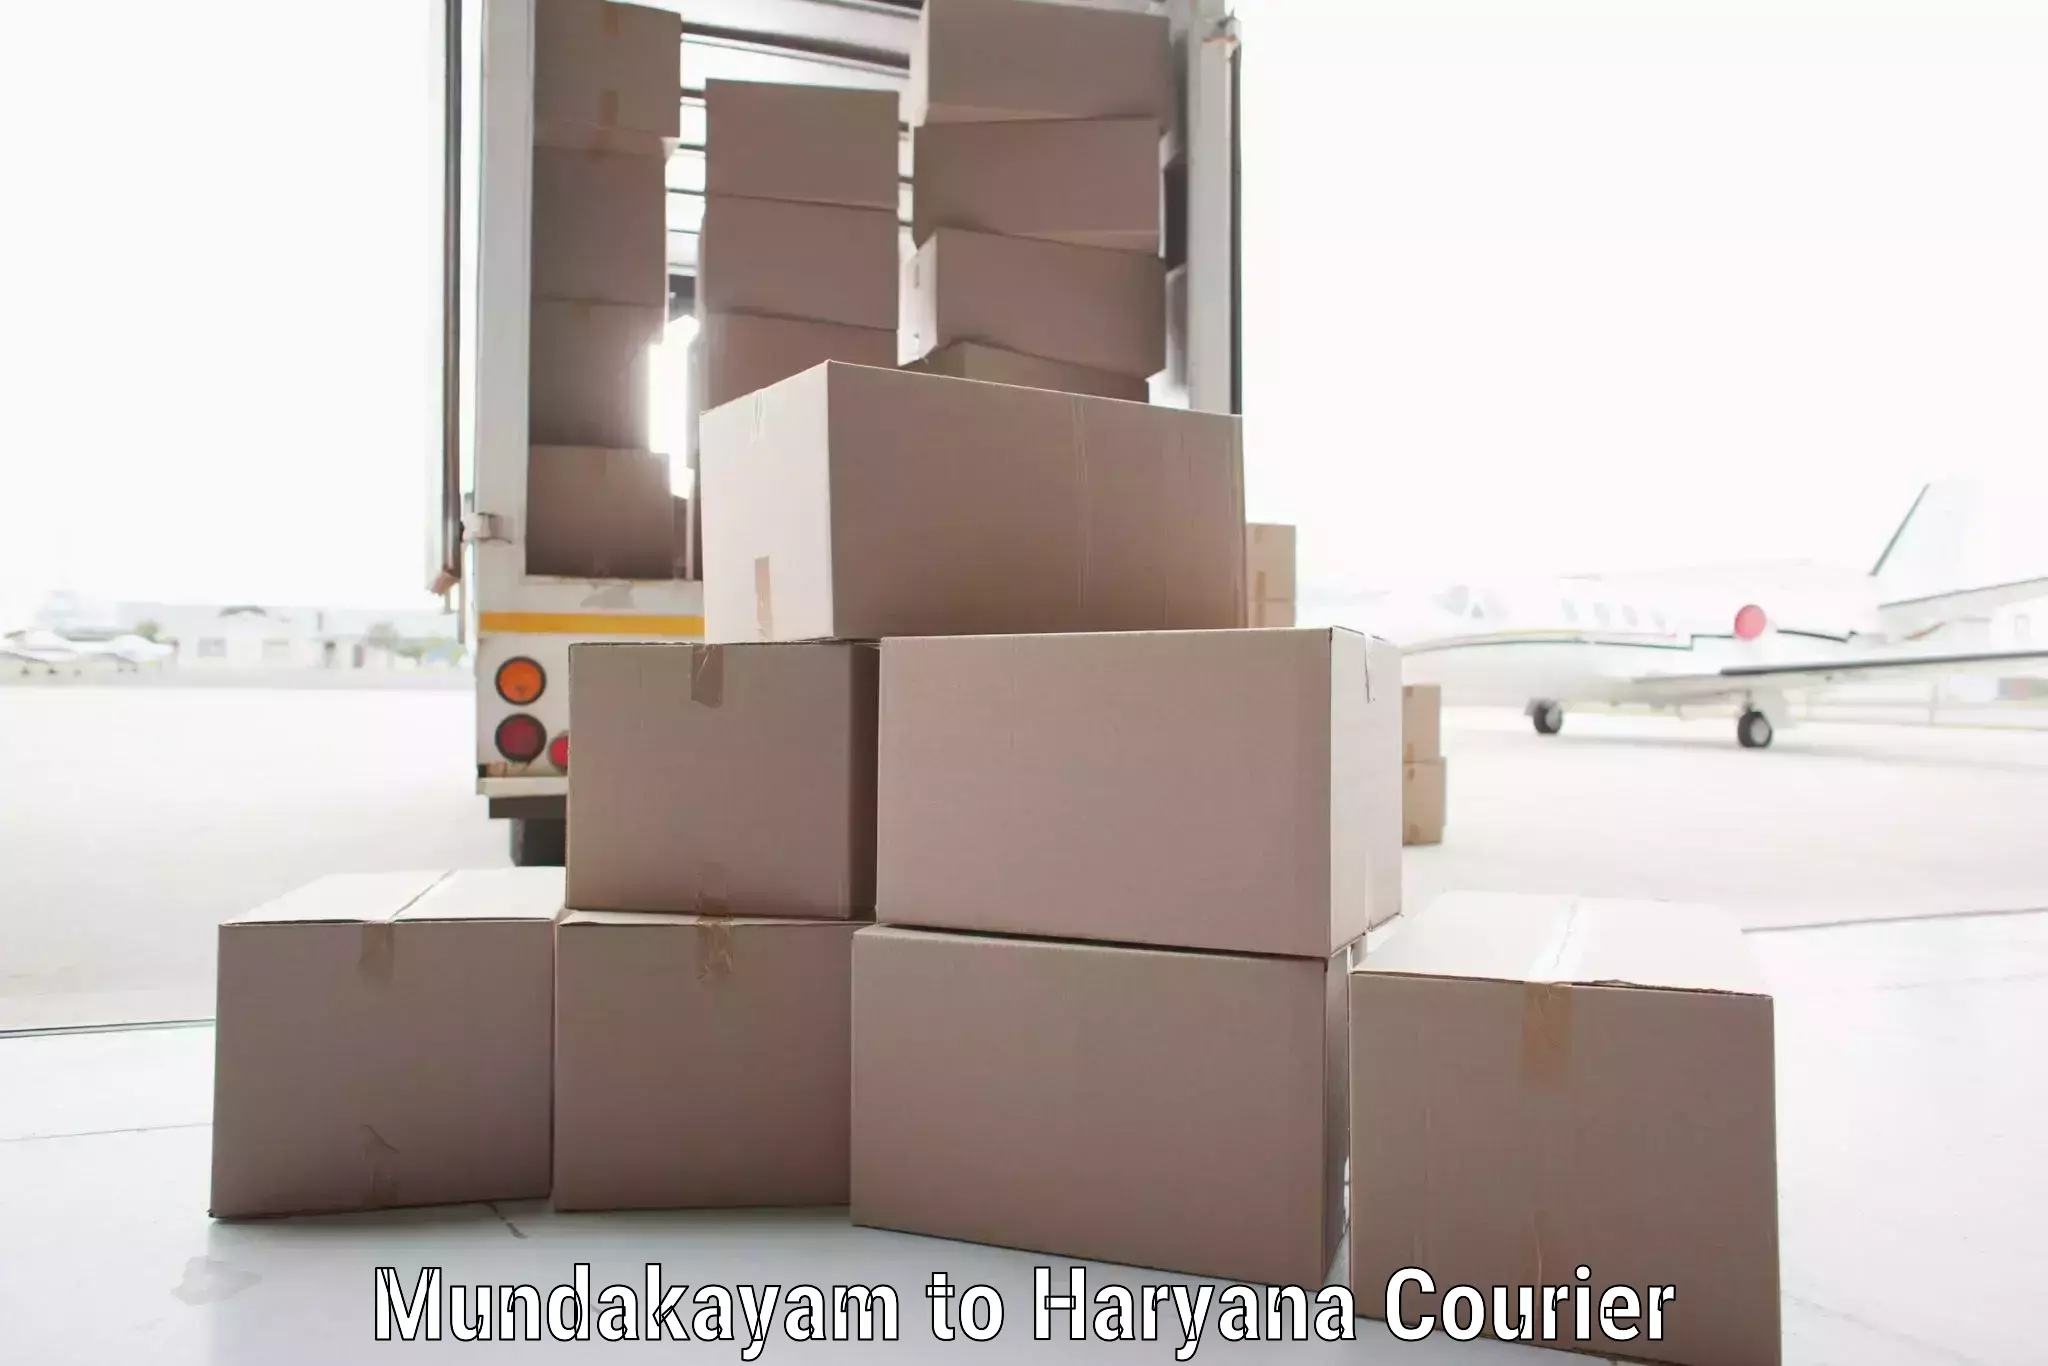 Bulk courier orders in Mundakayam to Haryana